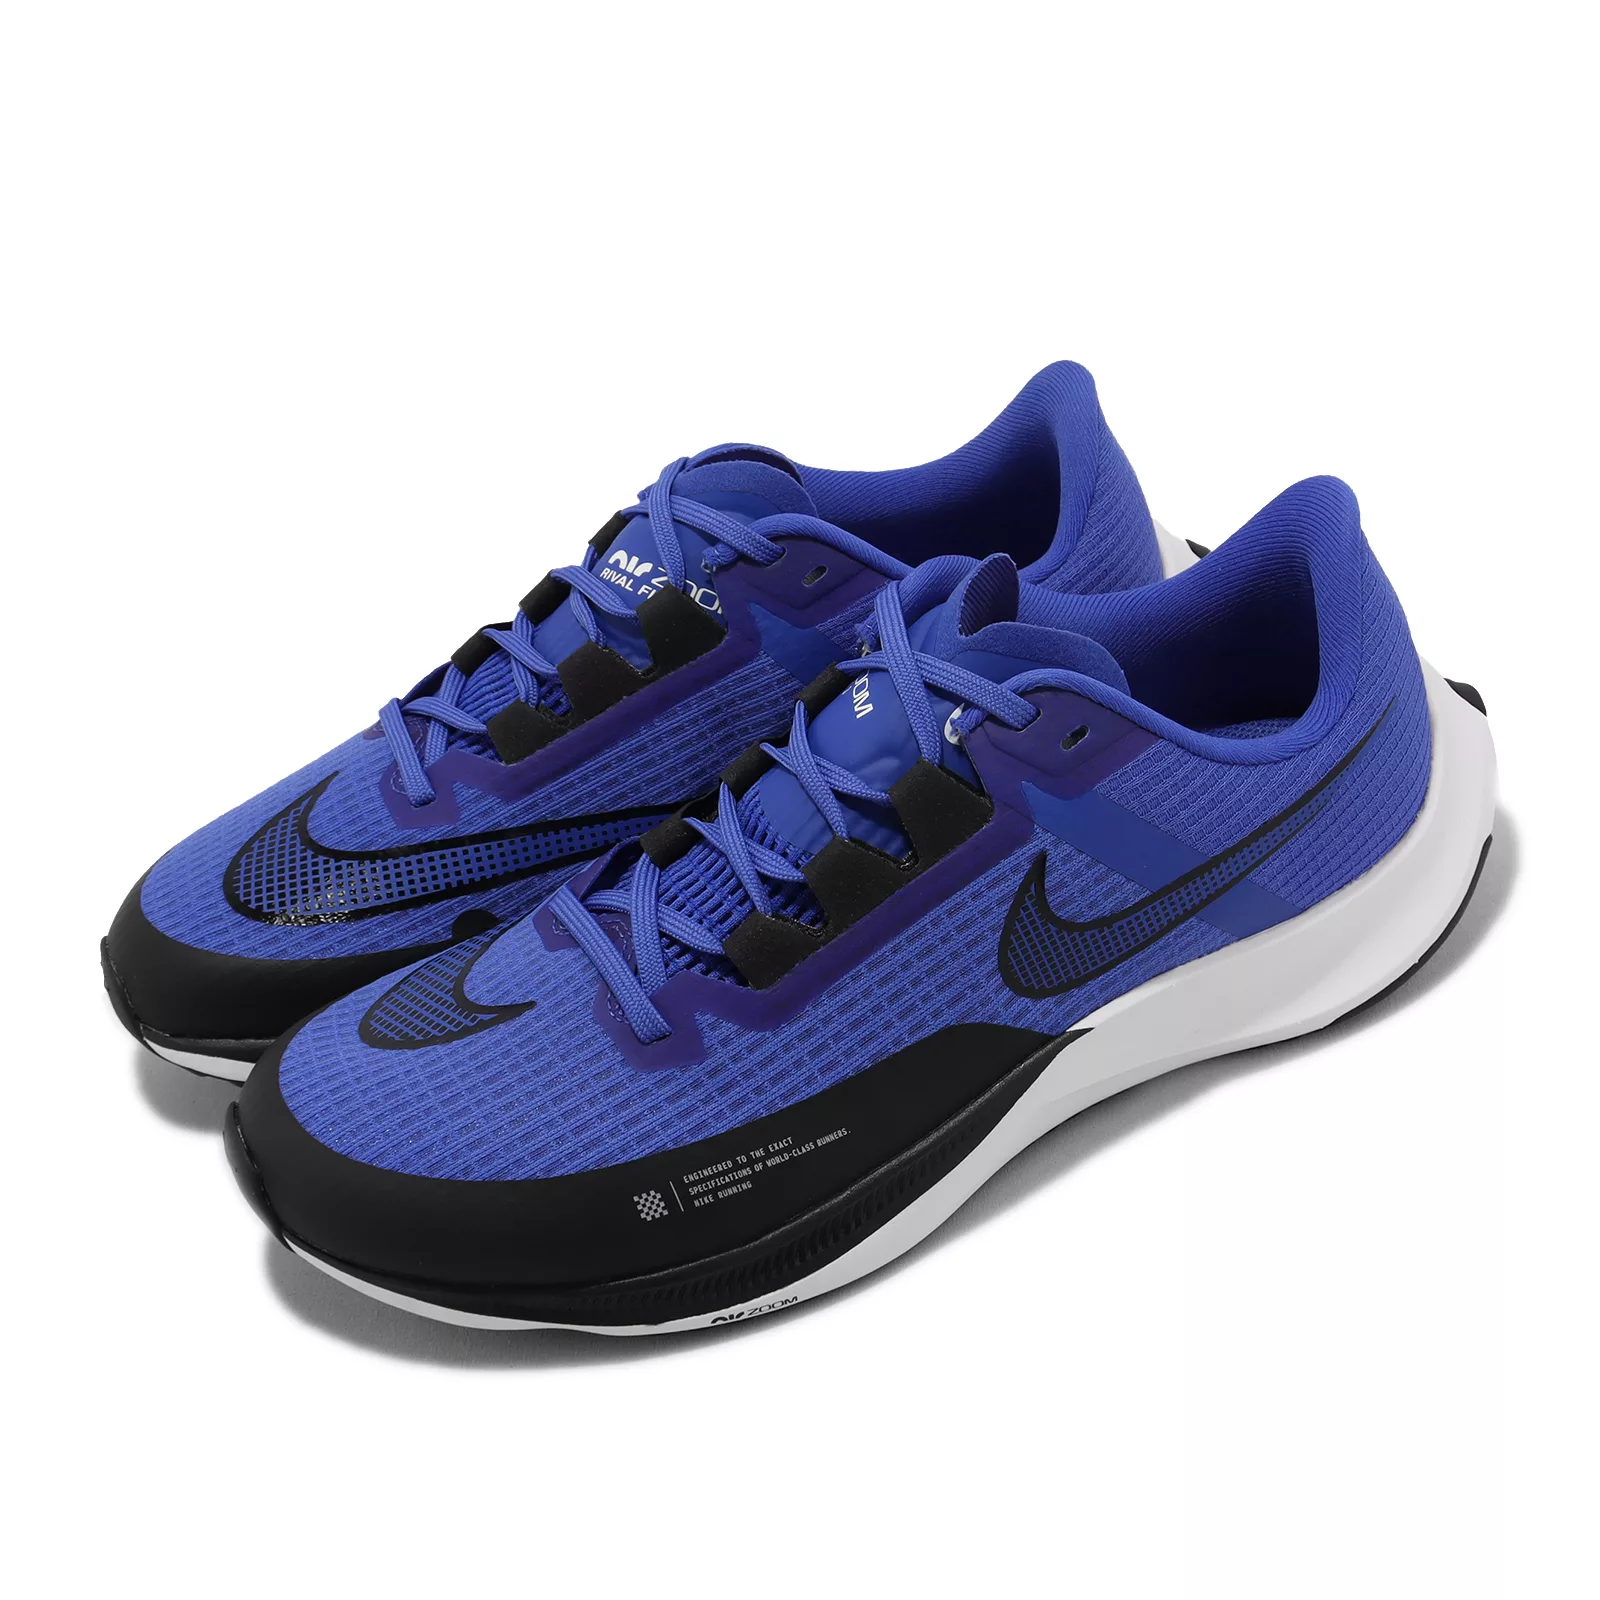 Nike 慢跑鞋 Air Zoom Rival Fly 3 男鞋 藍 黑 氣墊 回彈 路跑 運動鞋 CT2405-400